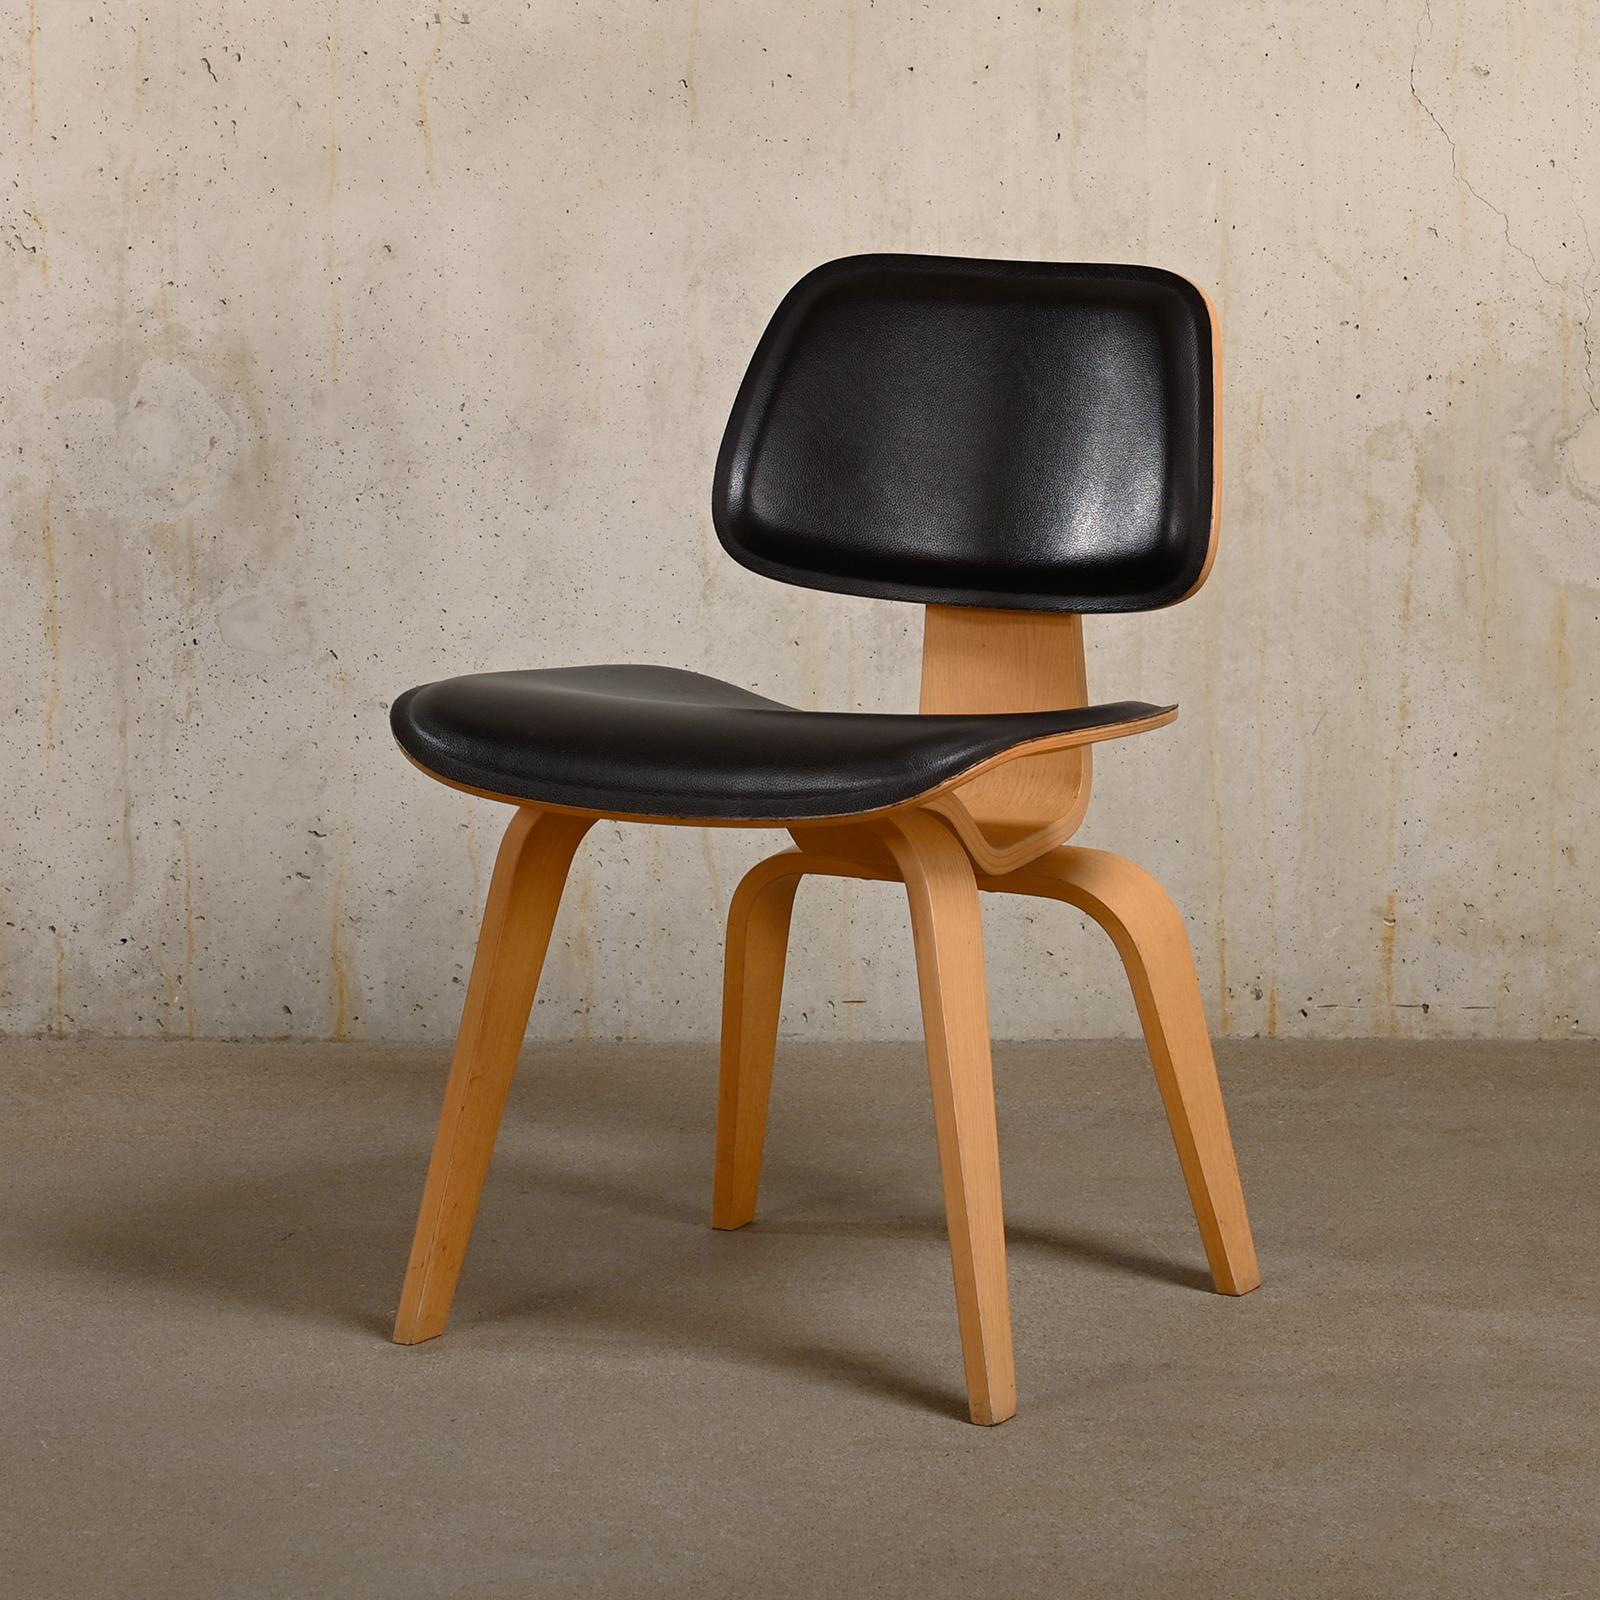 Chaise de salle à manger iconique DCW conçue par Charles & Ray Eames et fabriquée par Vitra, Allemagne. Cadres en bois de frêne massif, finition laquée mate. L'assise et le dossier sont recouverts d'un cuir brun très foncé et soutenus par des